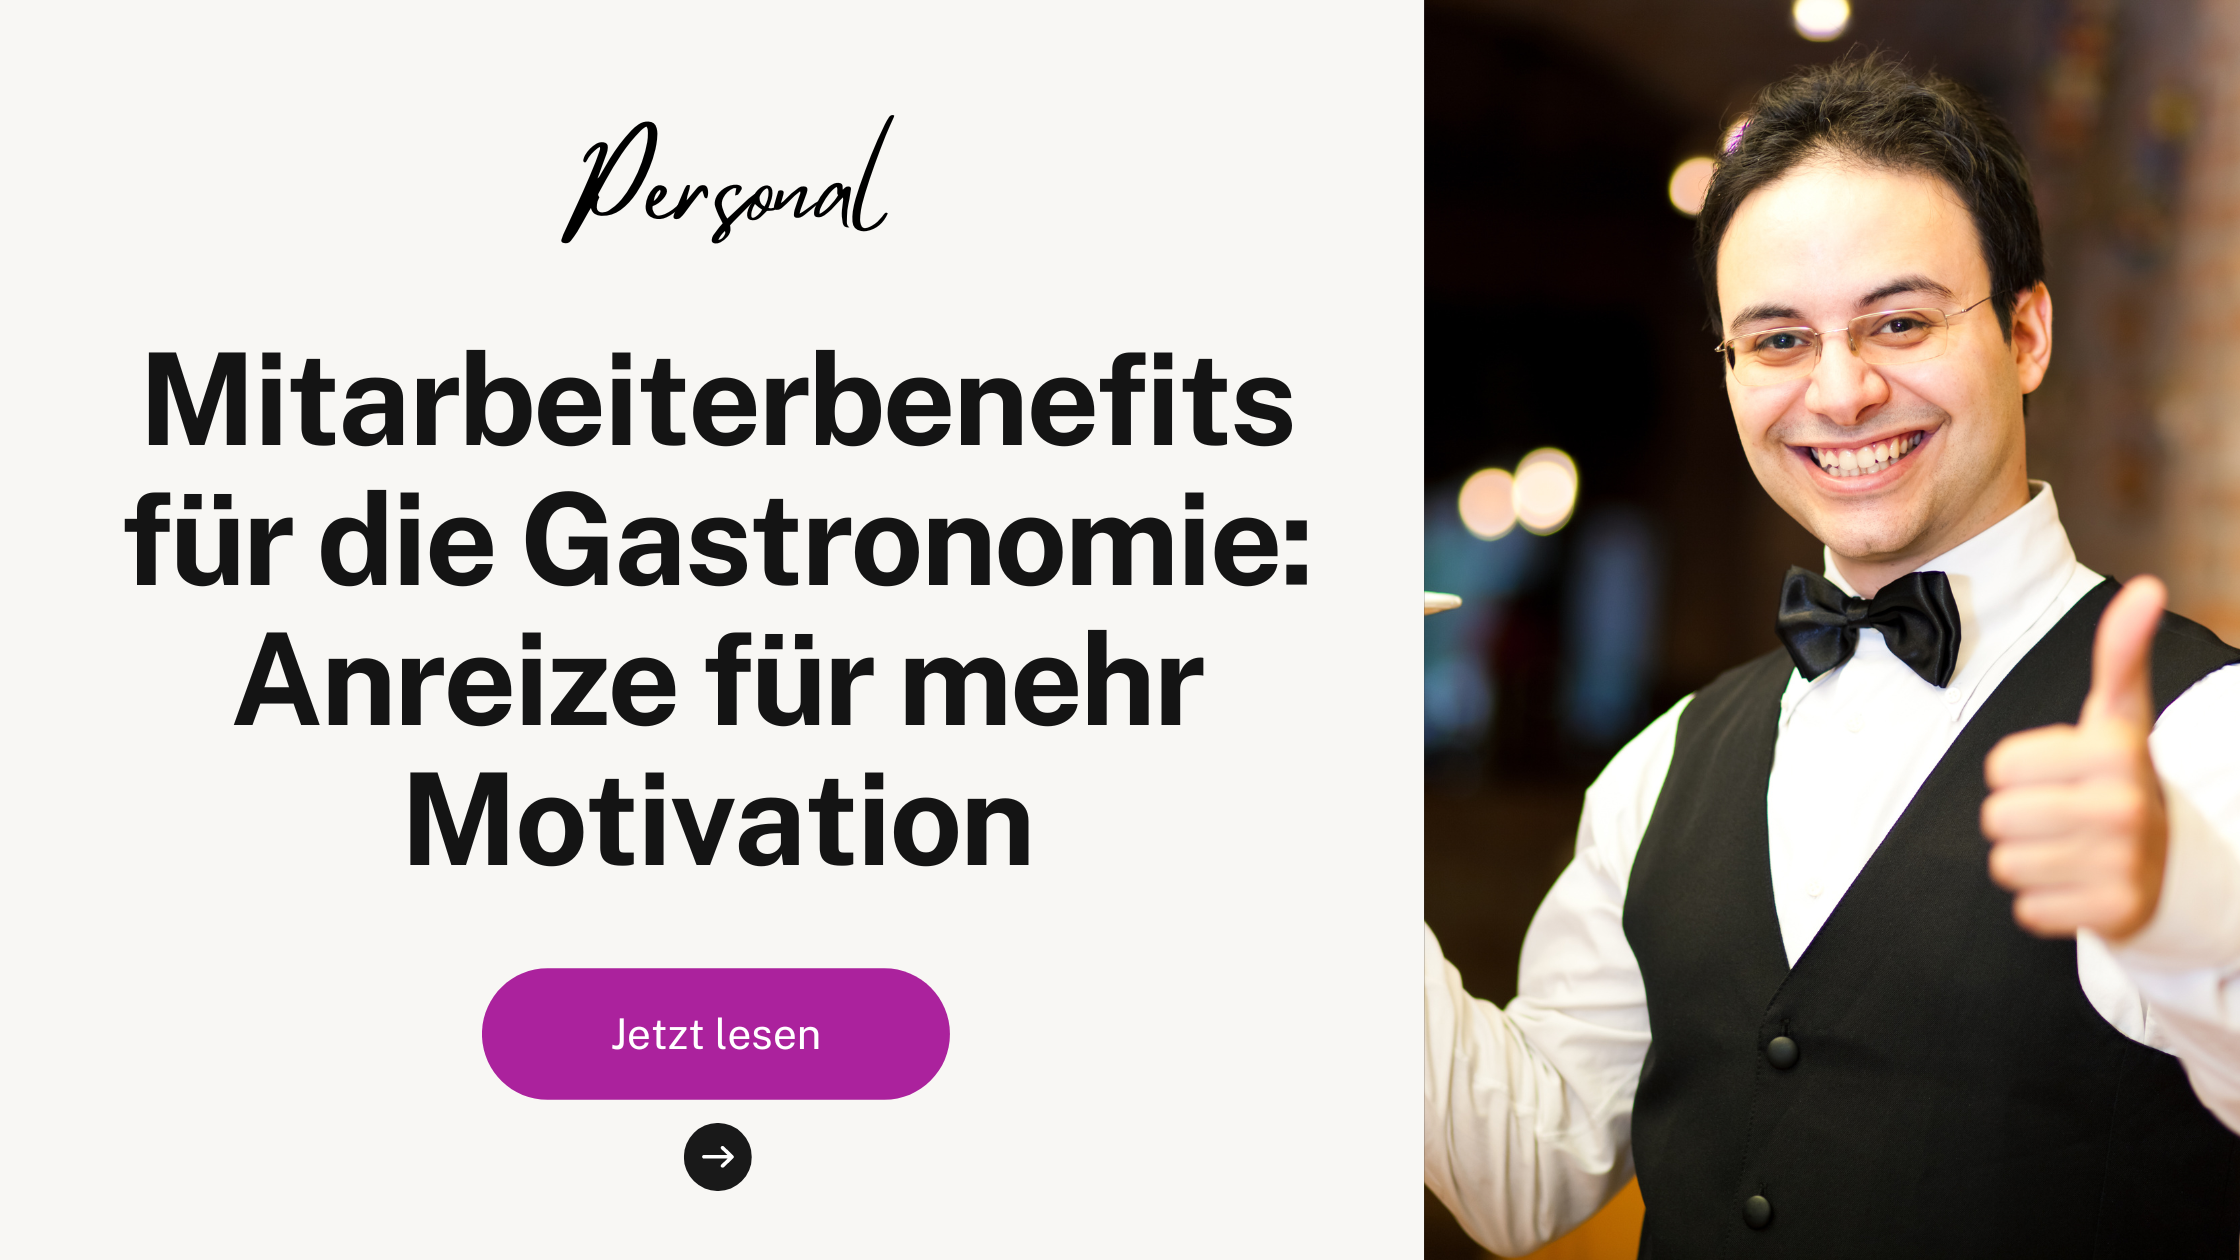 Mitarbeiterbenefits für die Gastronomie: Anreize für mehr Motivation